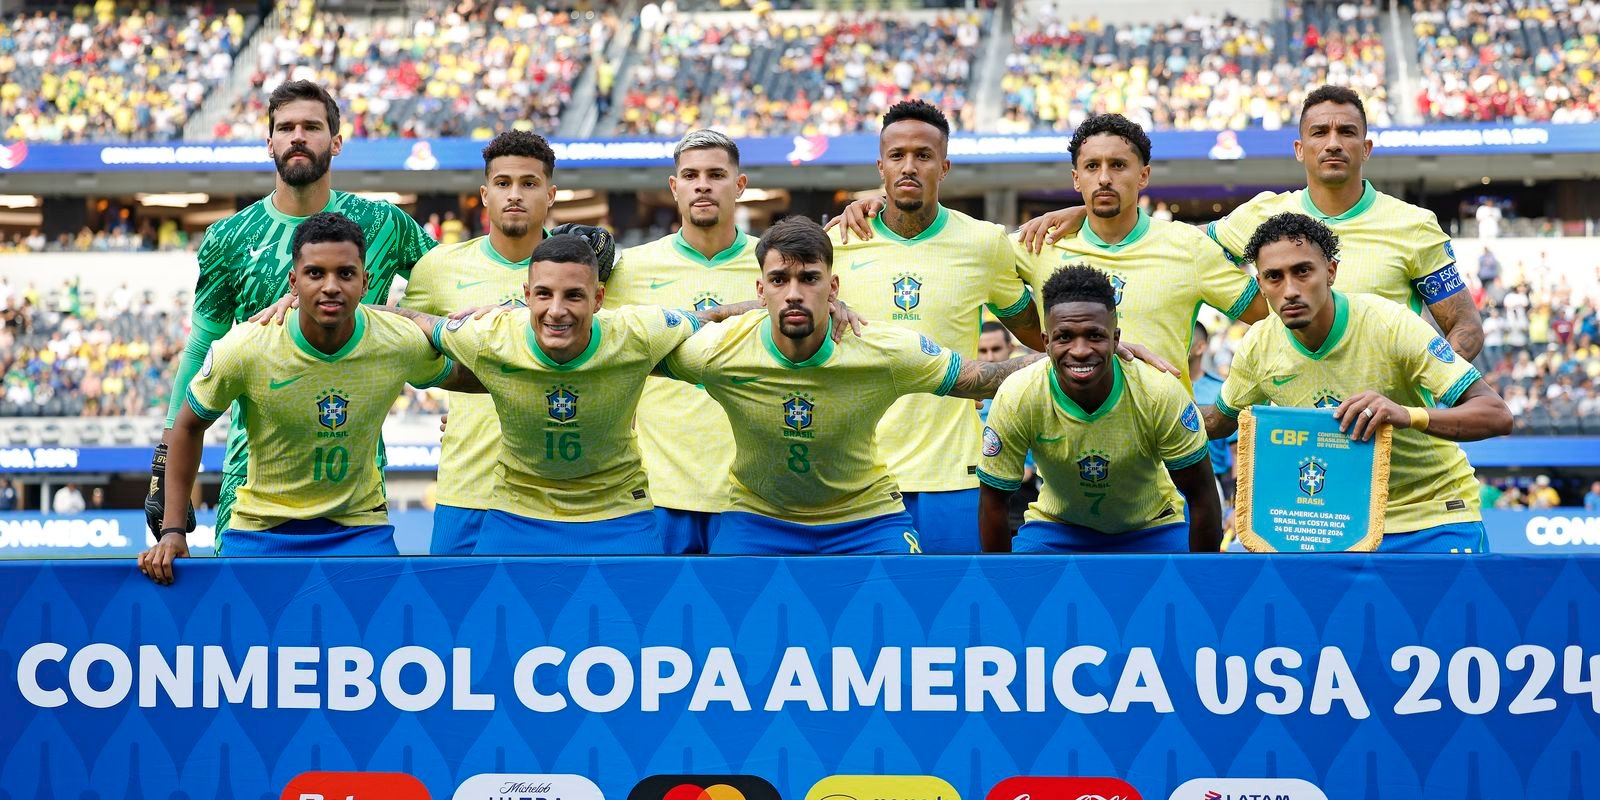 Brasil enfrenta Paraguai em busca da primeira vitória na Copa América